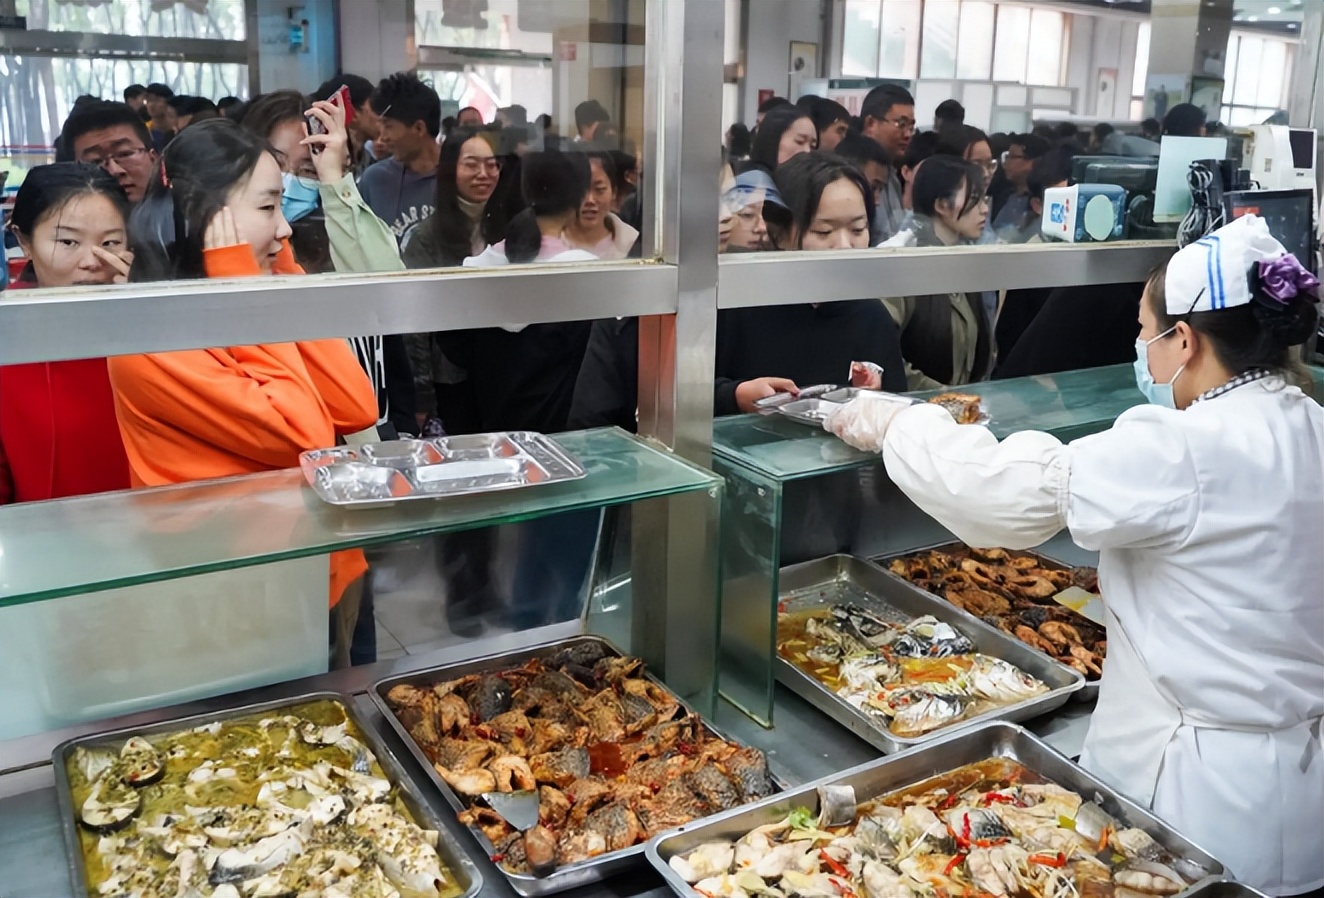 云南大学食堂真的好良心,肉菜最贵的45元,素菜最贵的15元